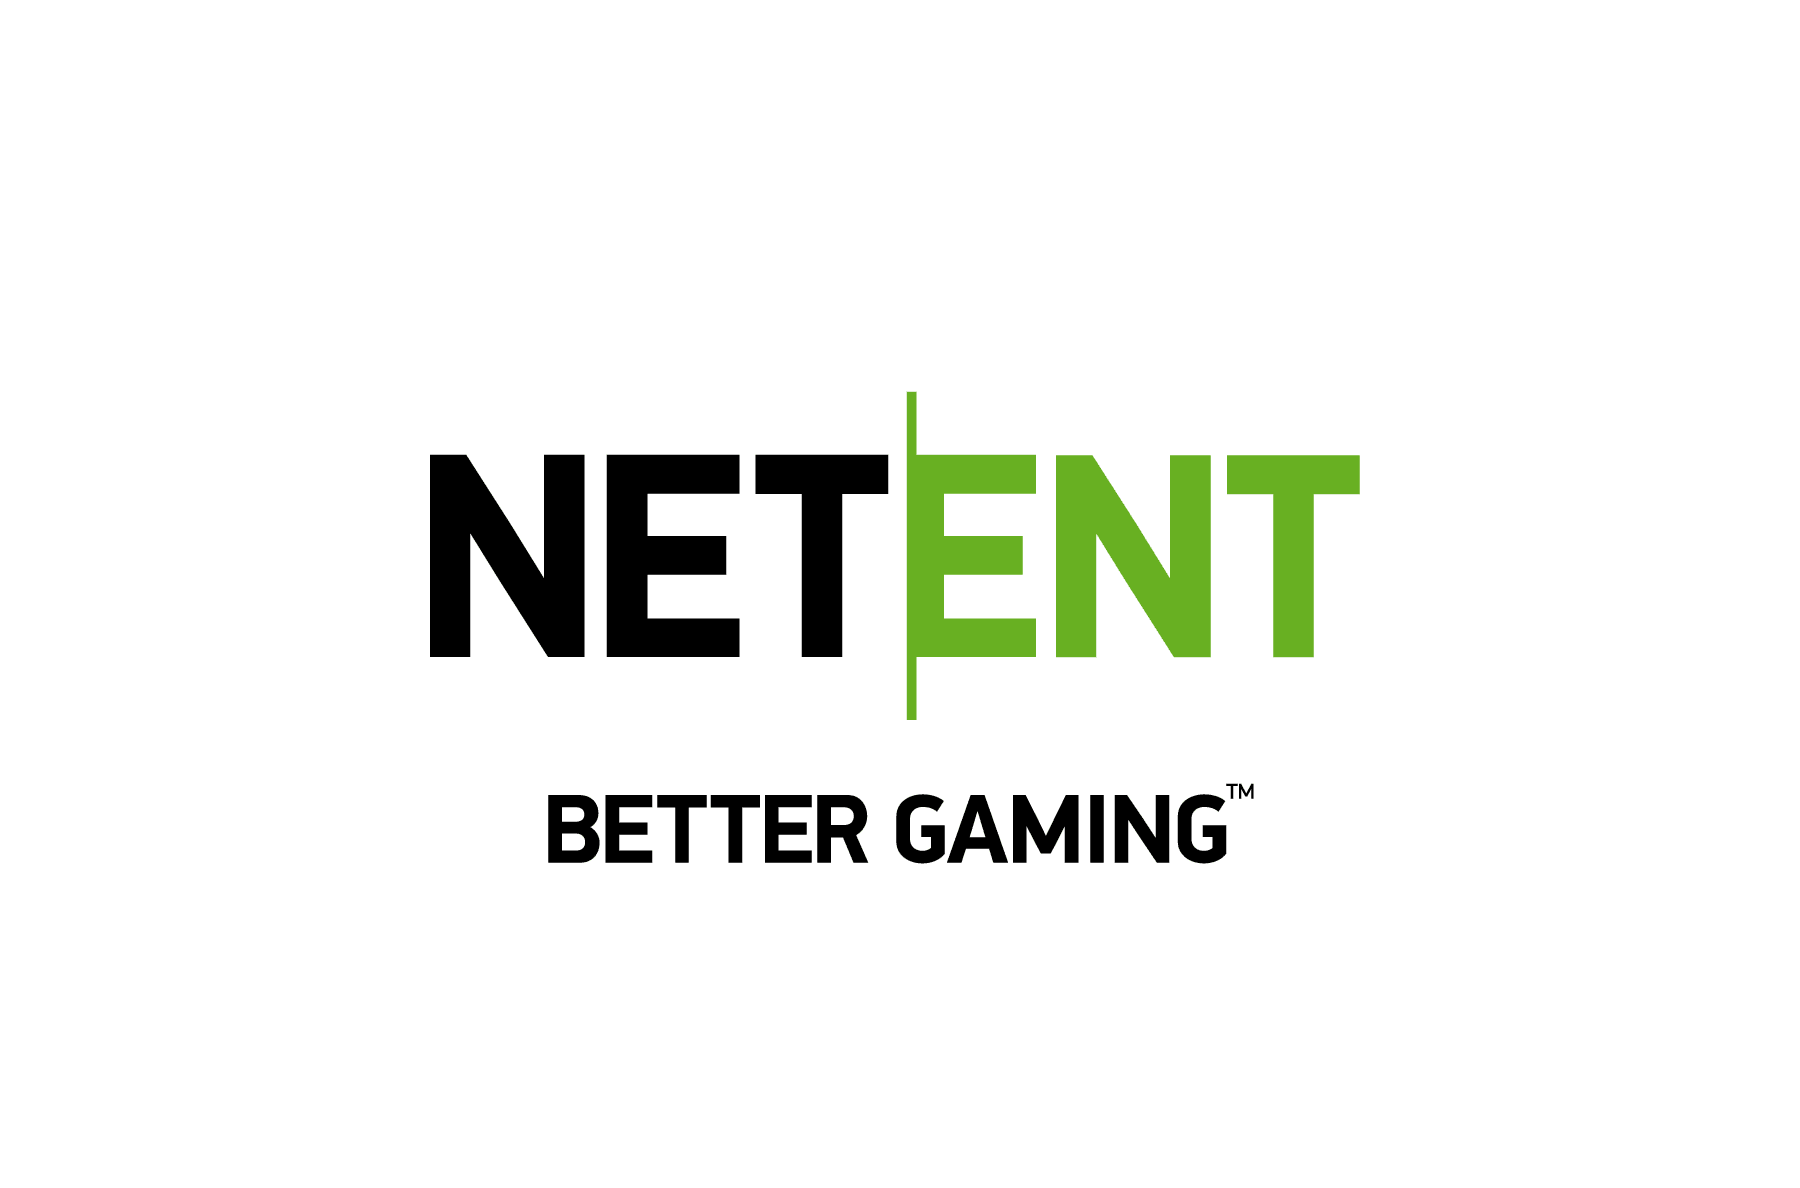 ល្អបំផុត 10 កាស៊ីណូថ្មី ជាមួយ NetEnt